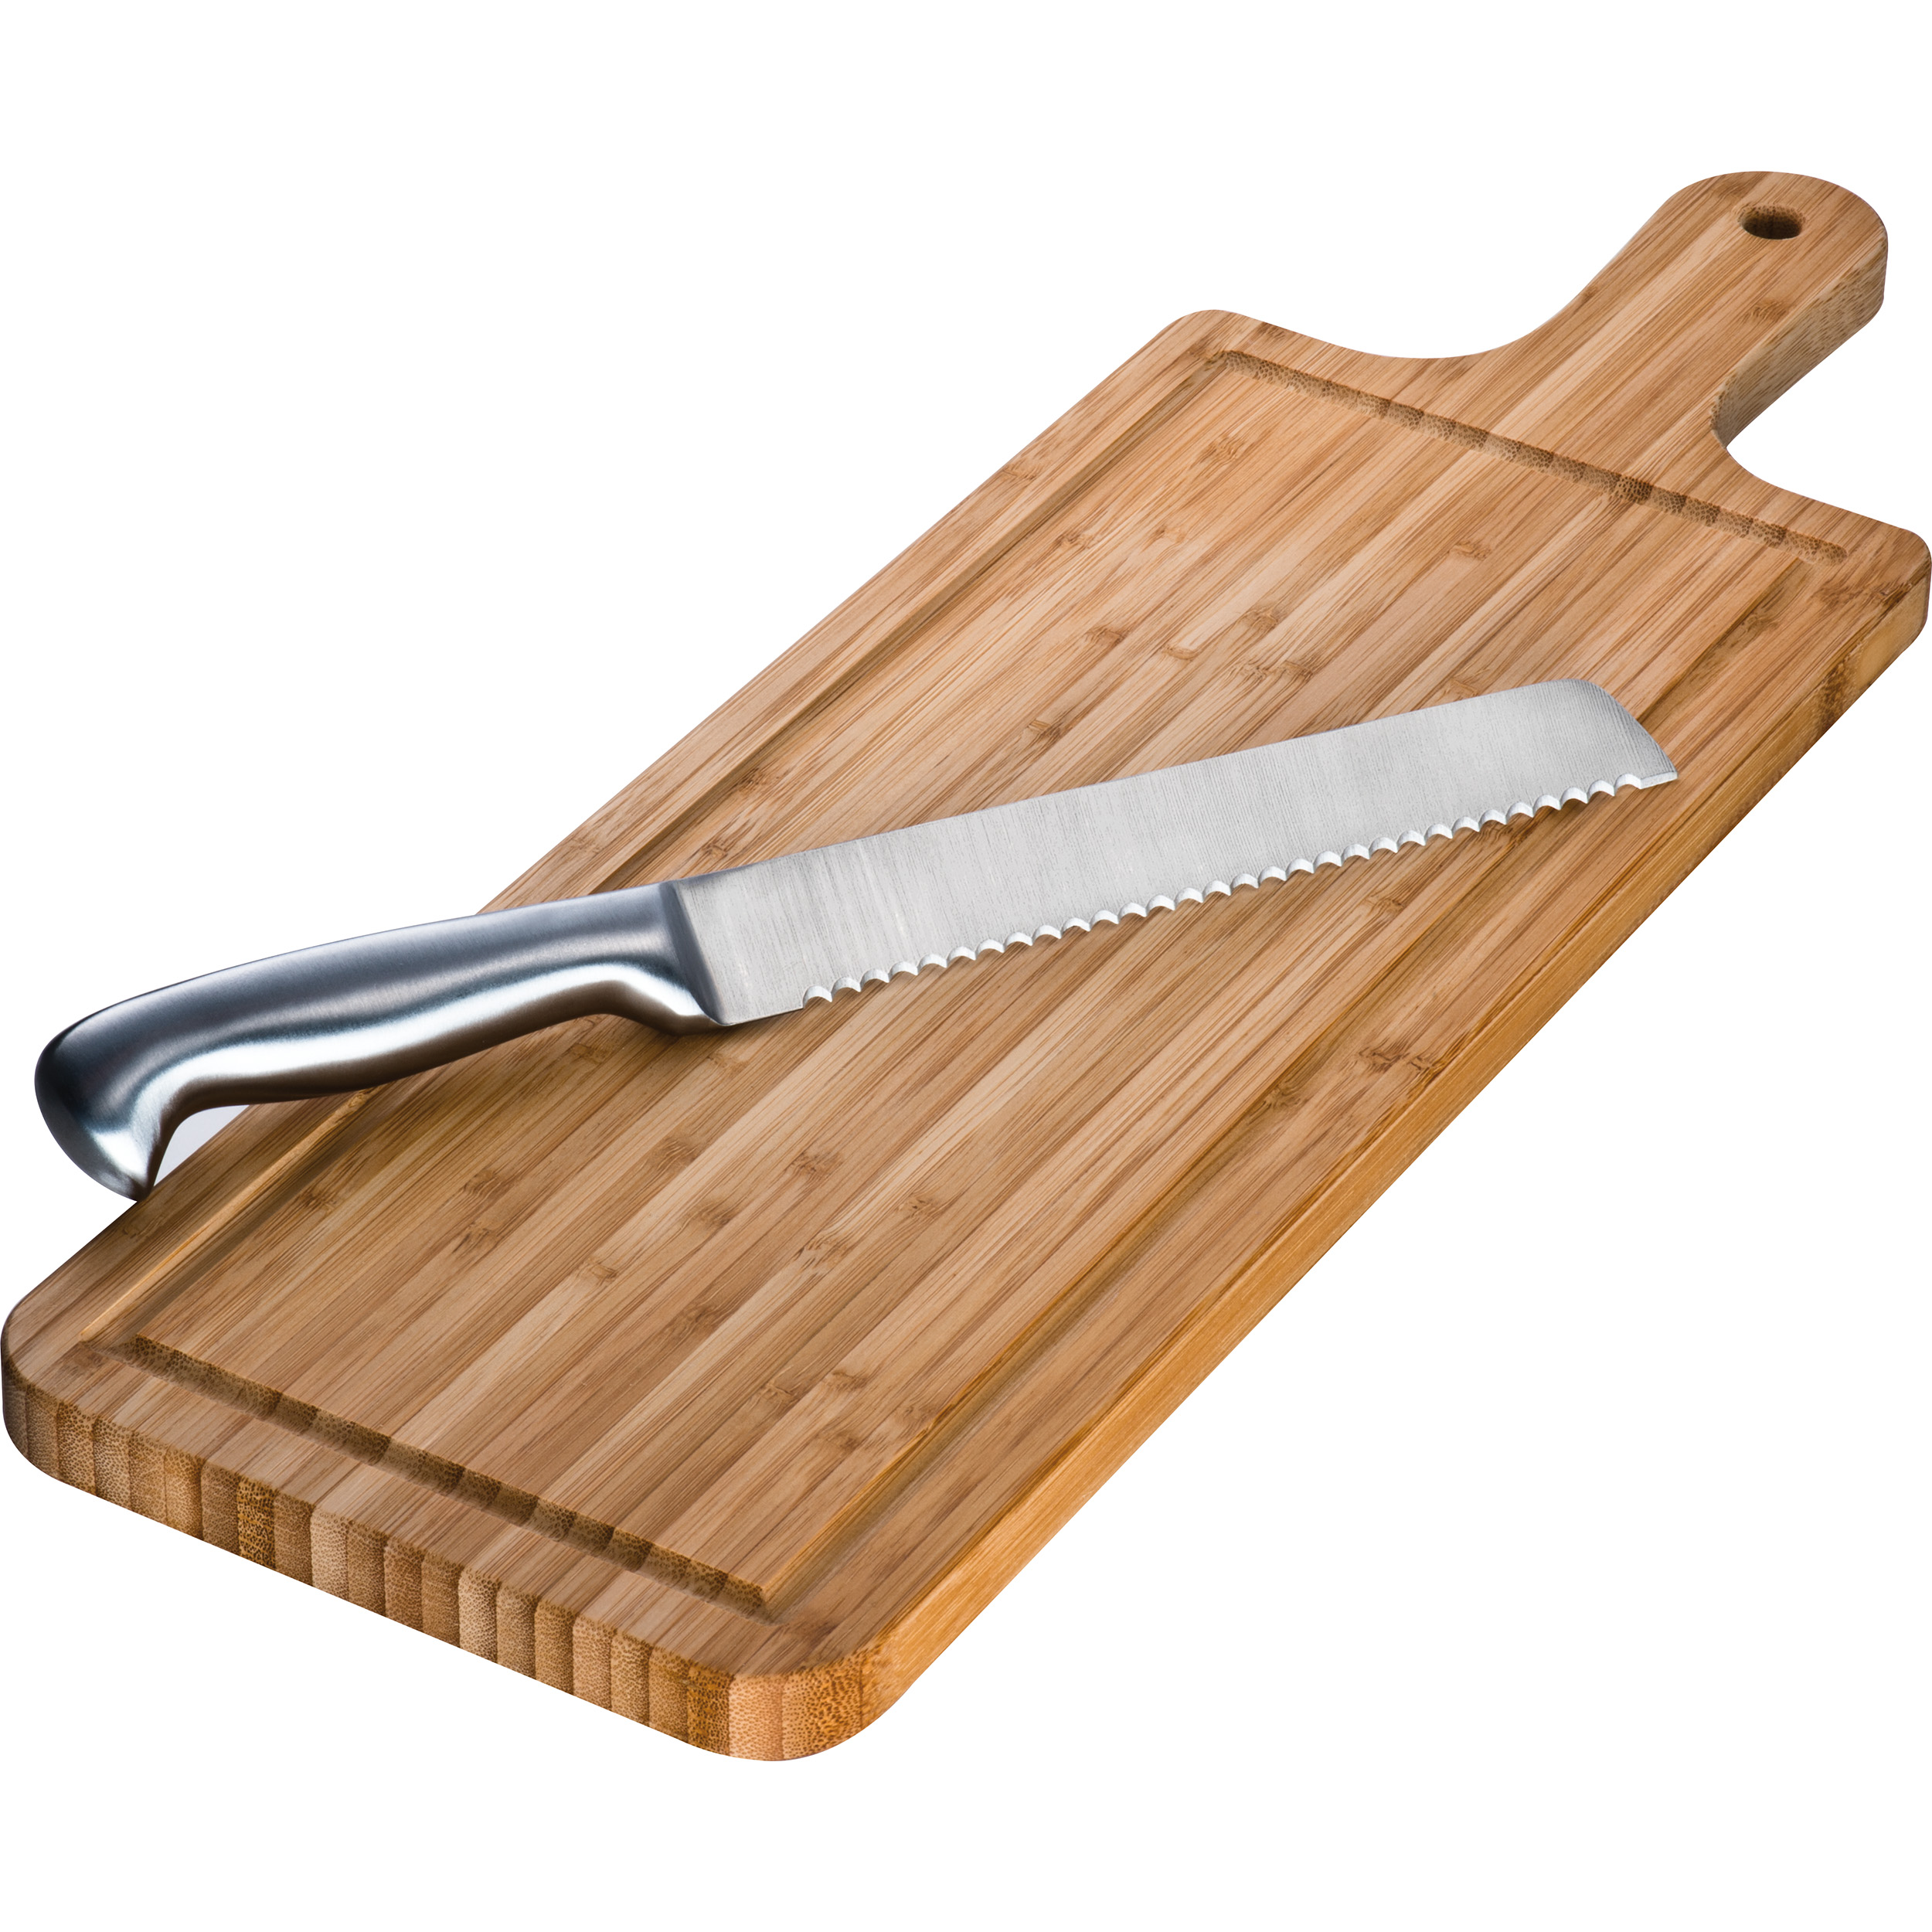 Tabla de corte de bambú con cuchillo.